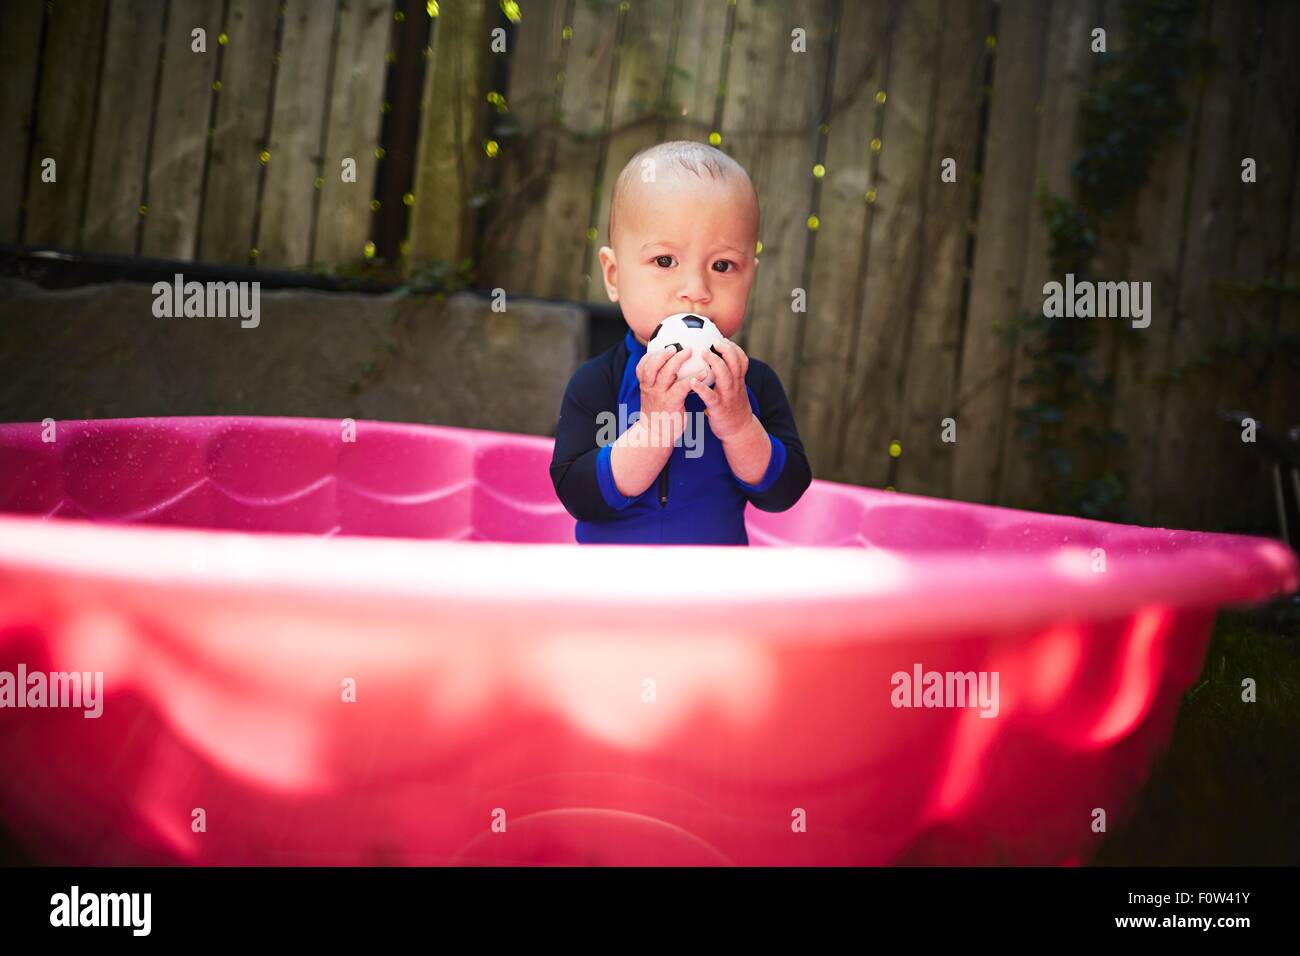 Baby Boy dentro de bañera rosa Foto de stock